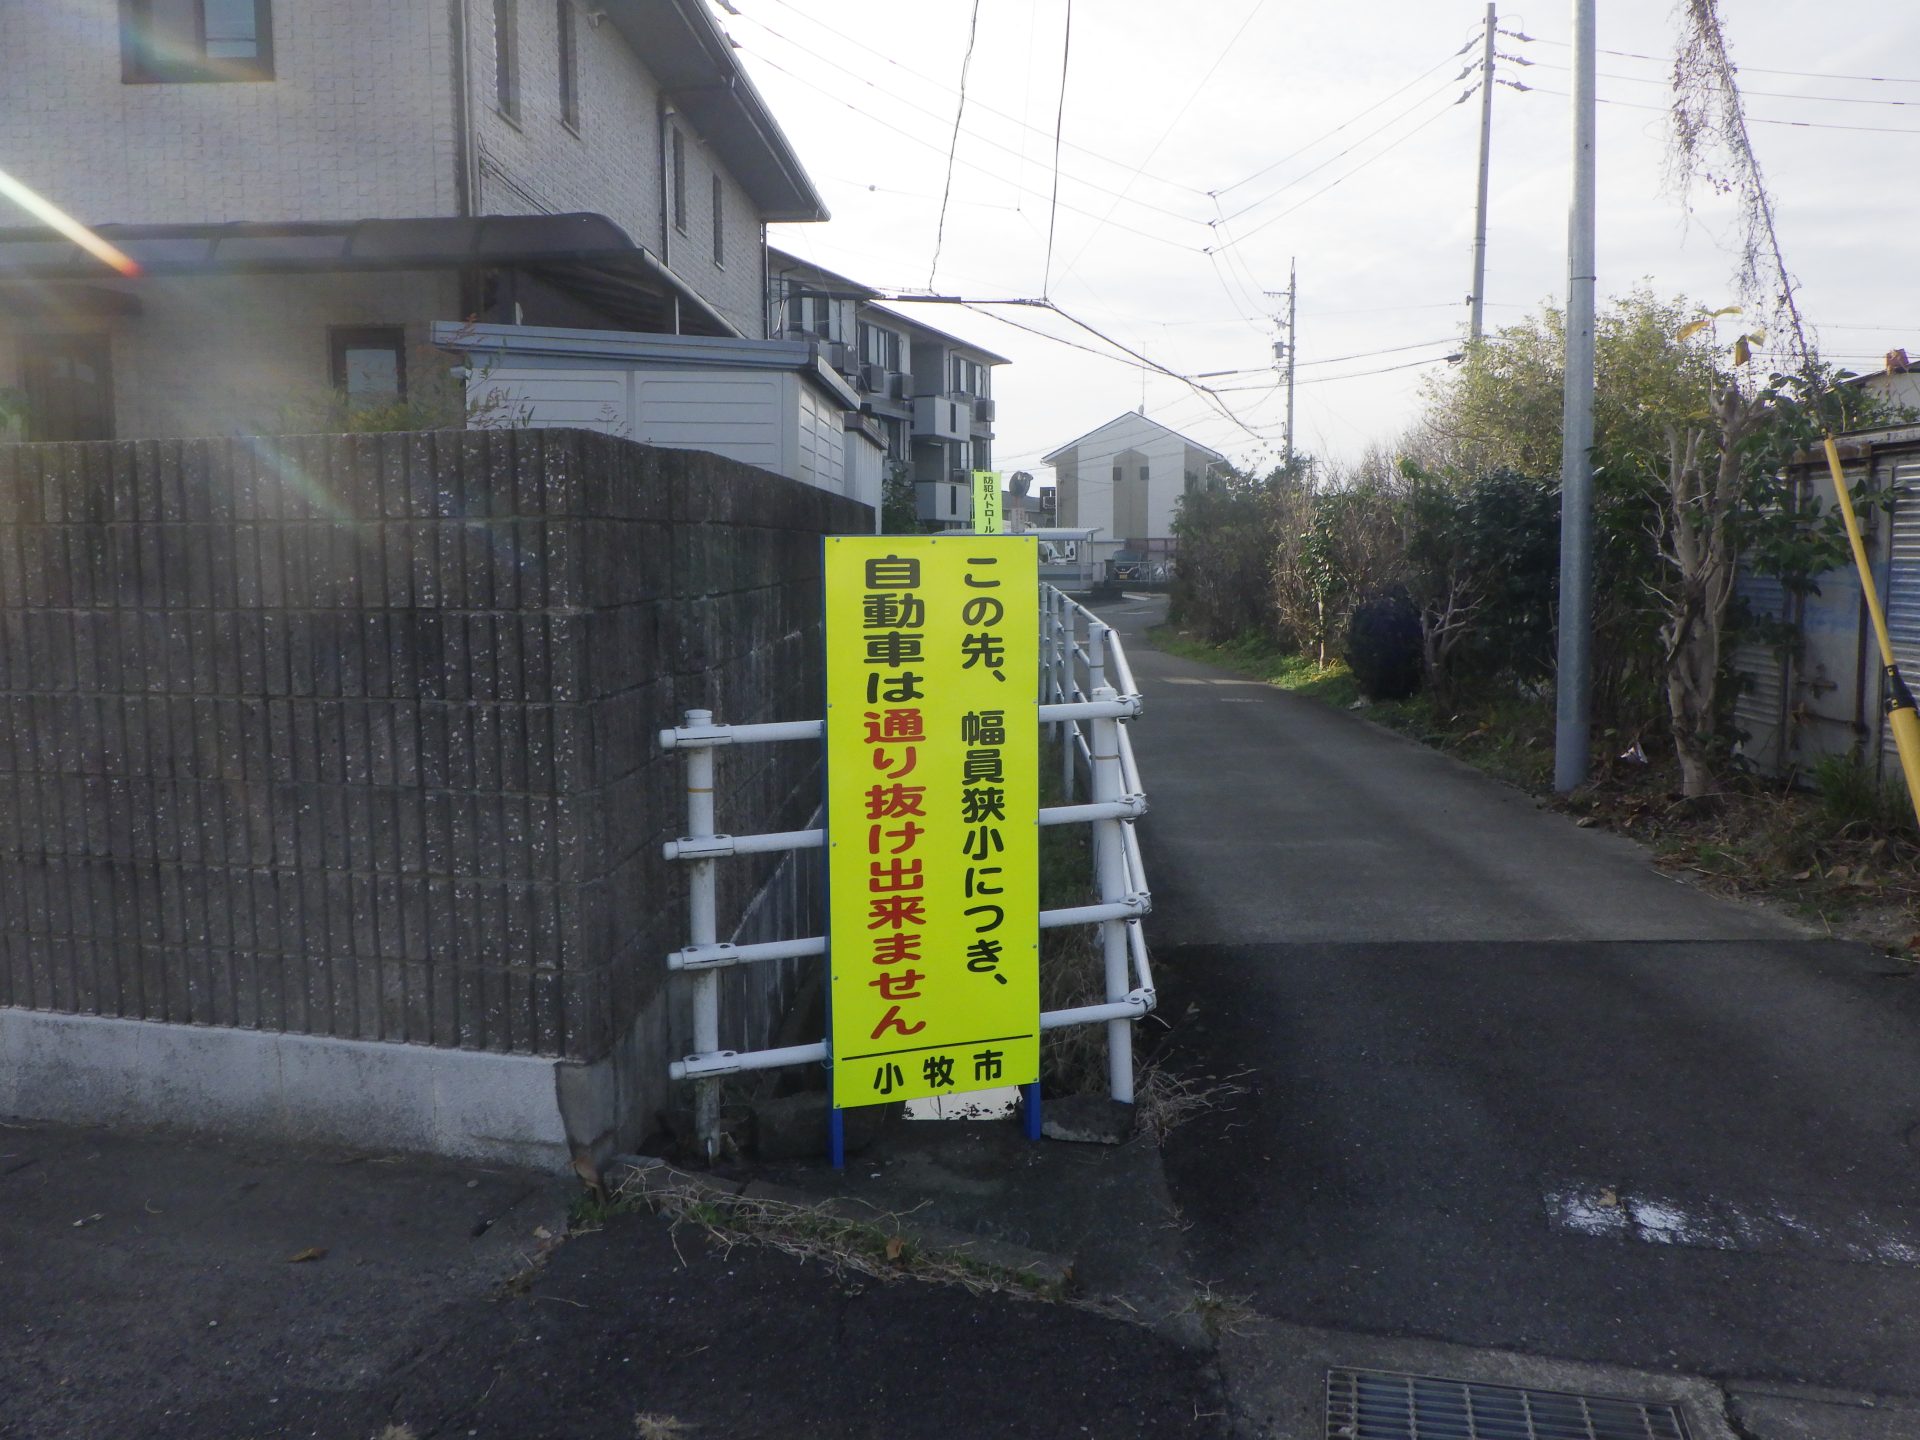 『通り抜け出来ません』立て看板設置 | 道路標識・サイン工事